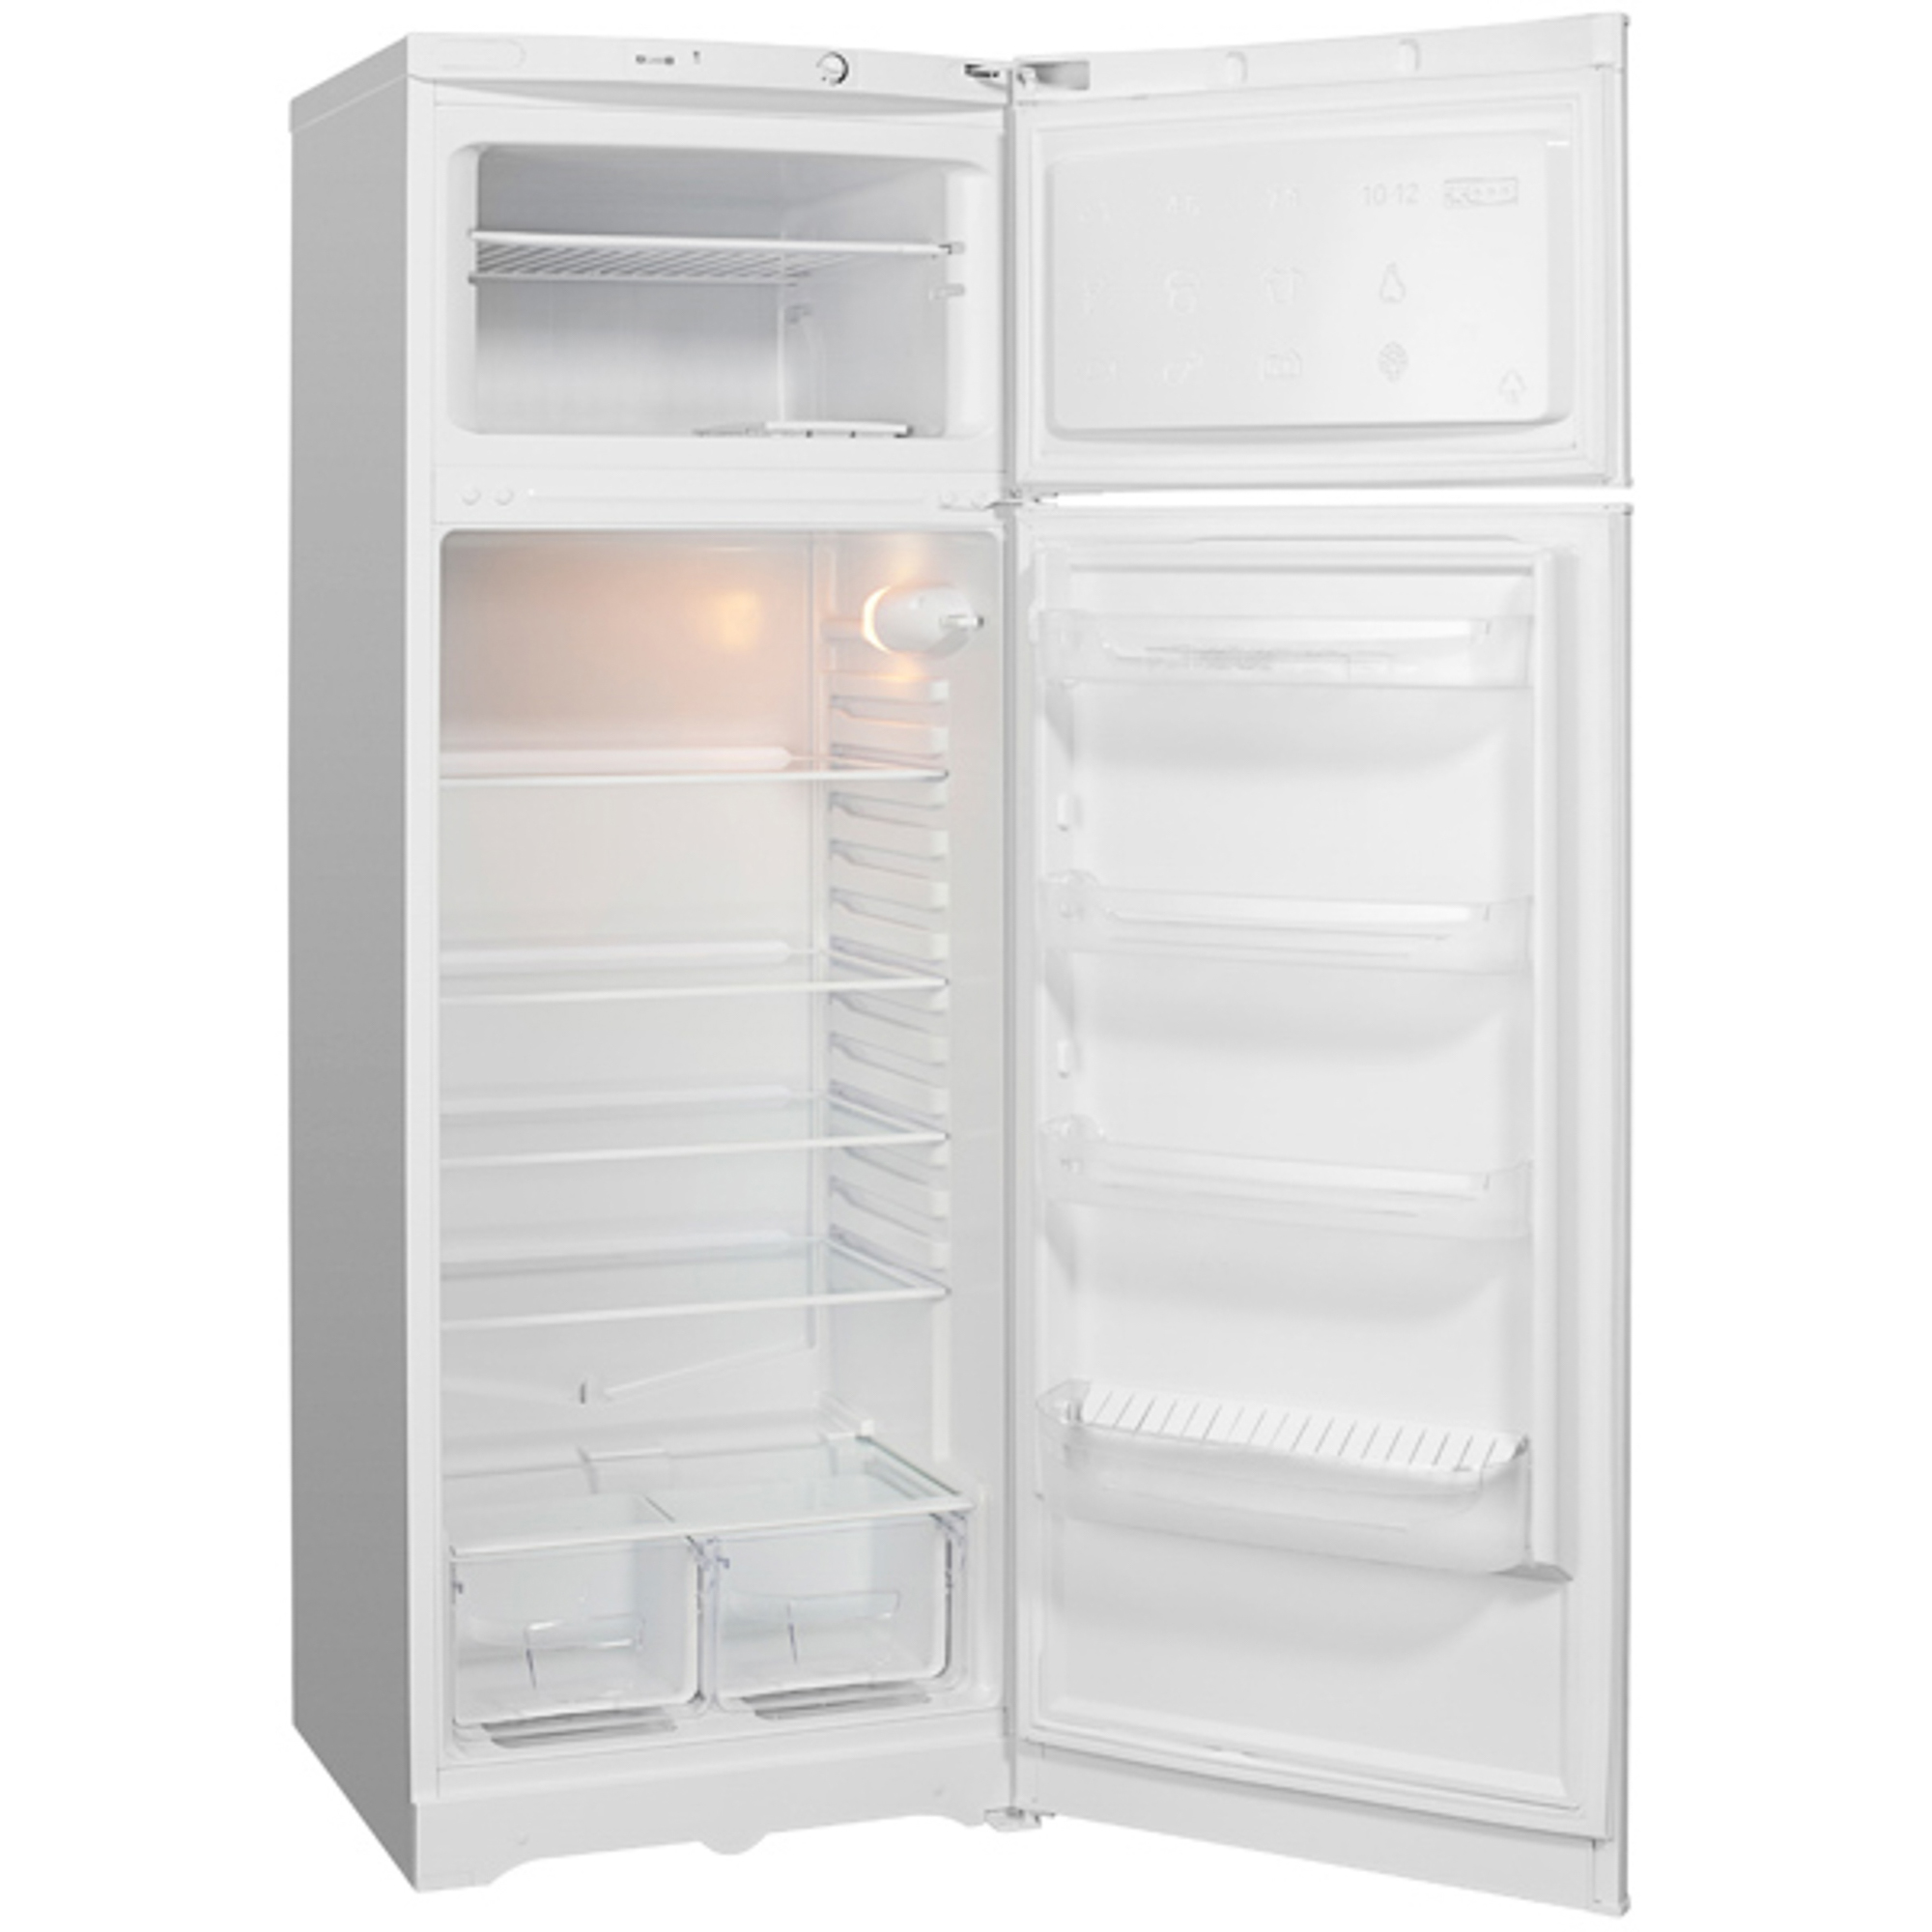 фото Холодильник indesit tia 16 white